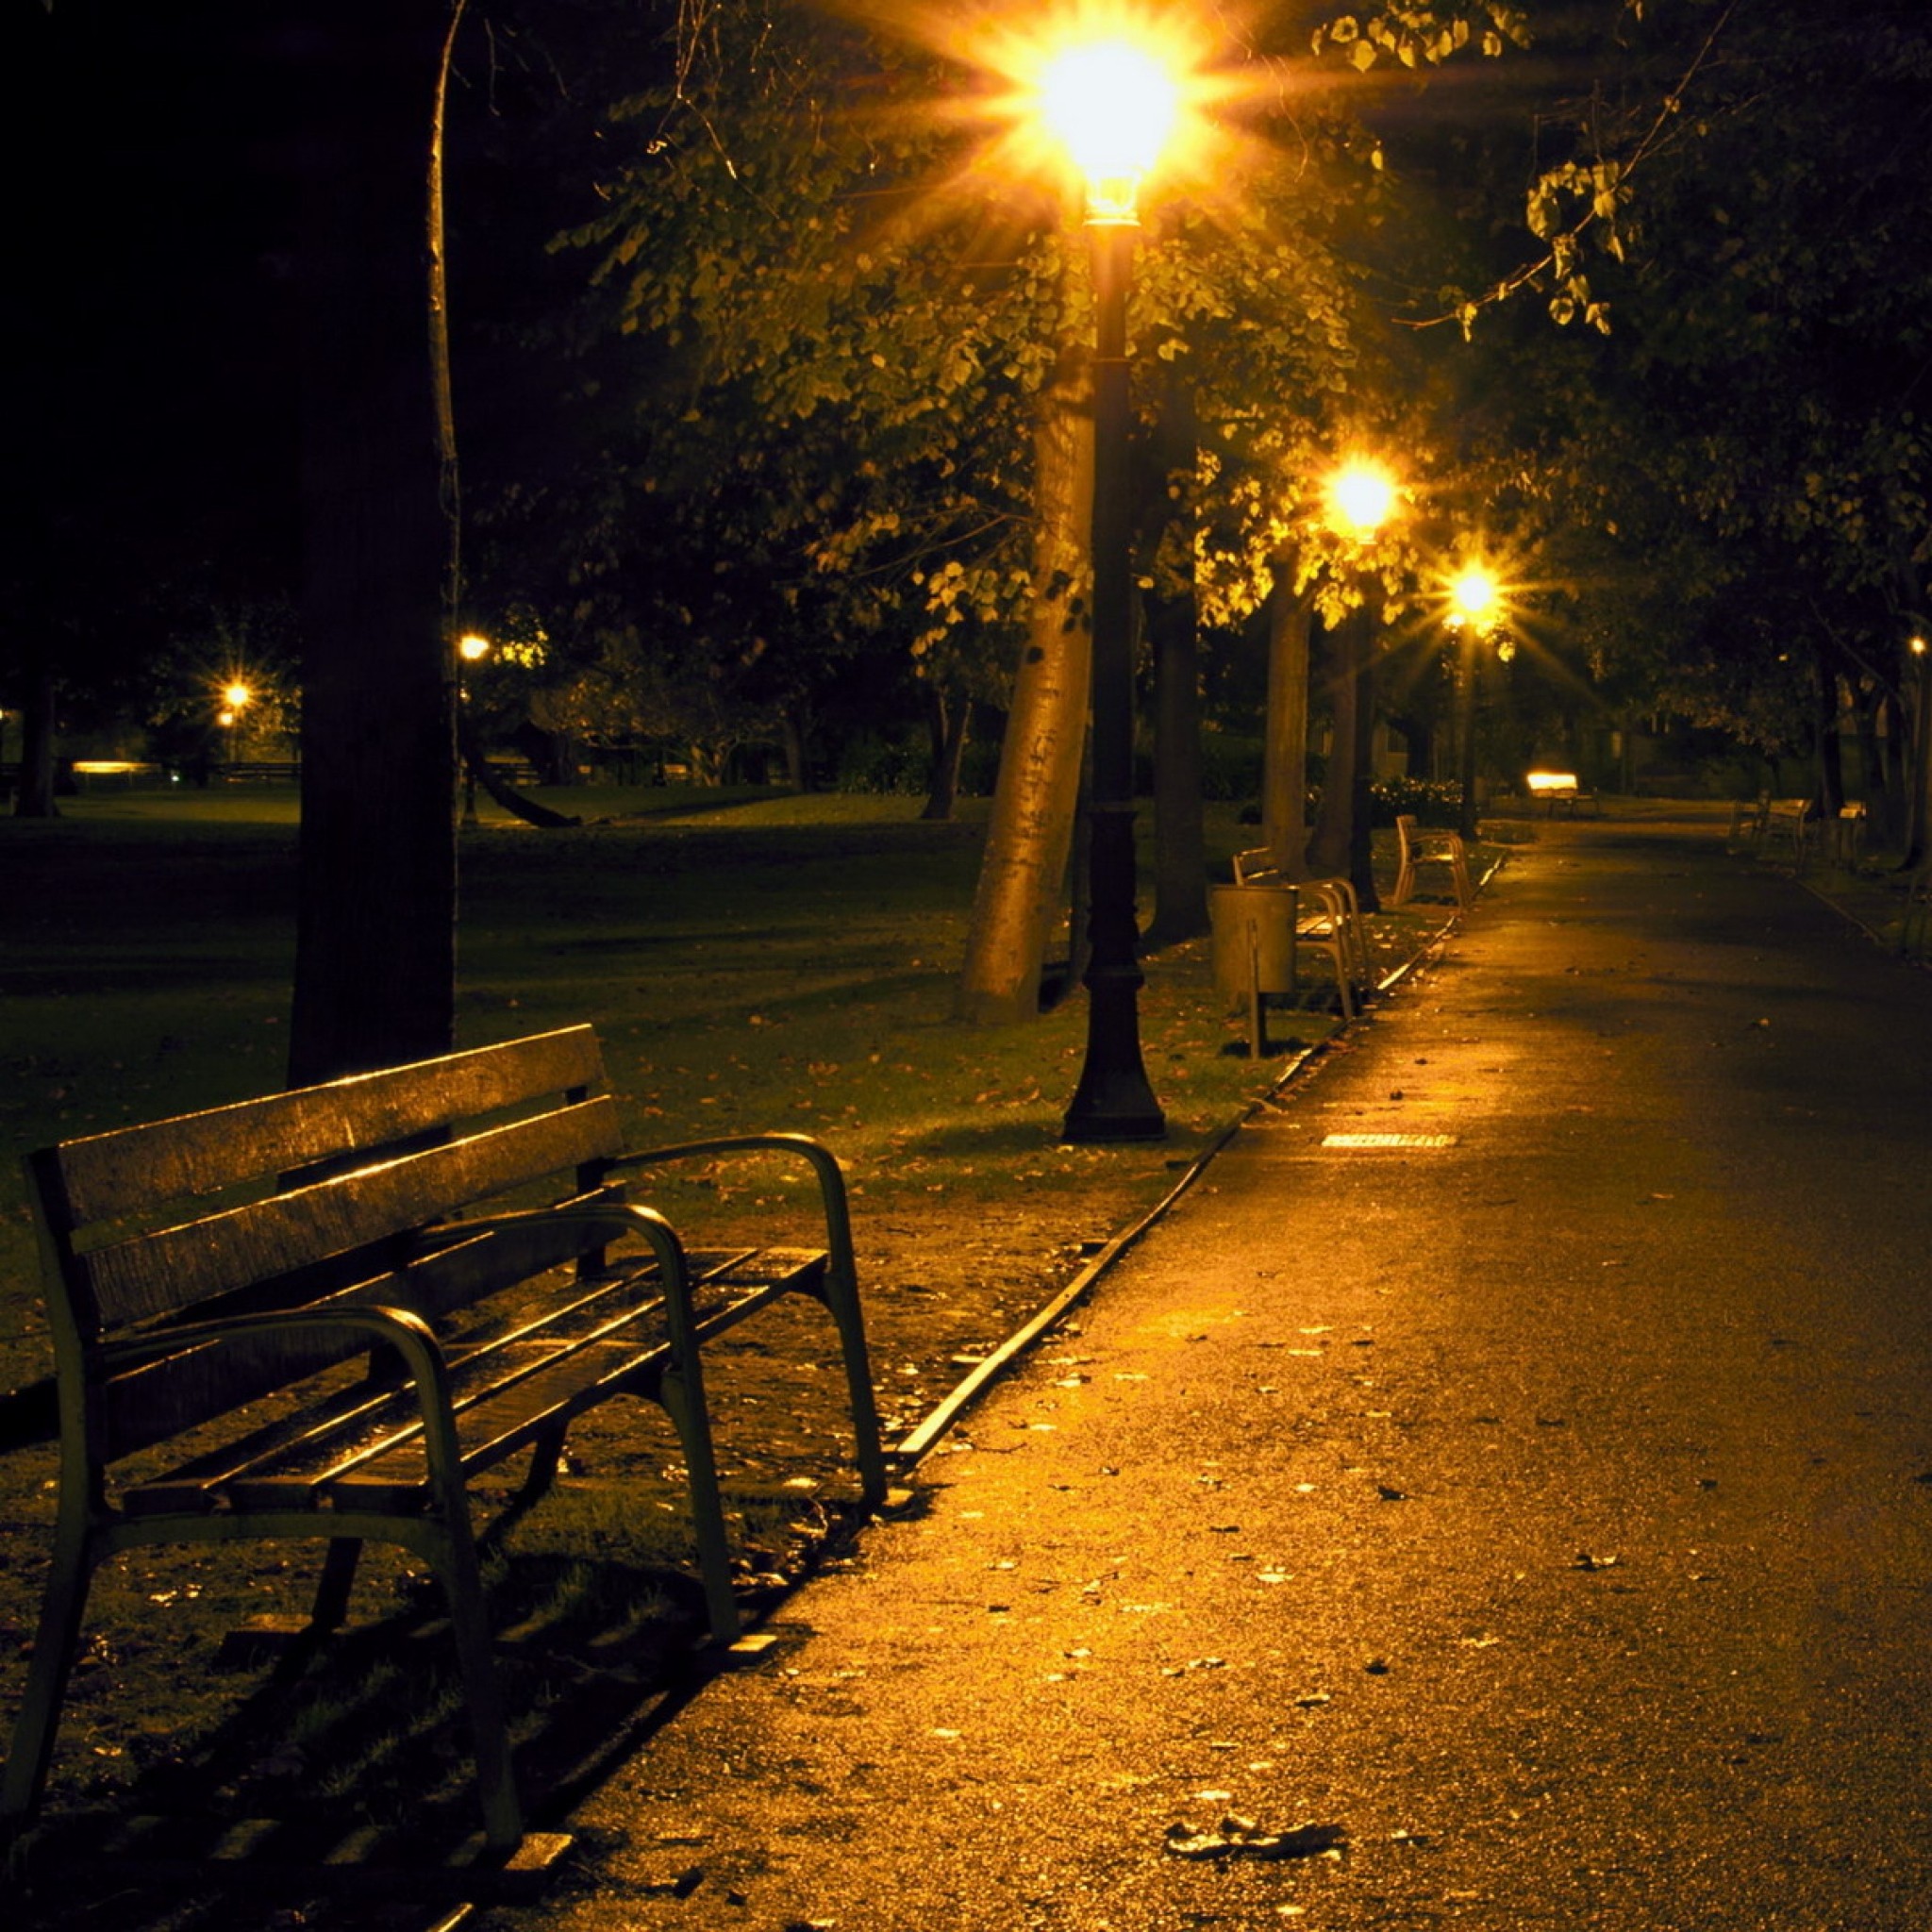 9 вечера на улице. Аллея ночью. Улица вечером. Ночная улица в парке. Парк вечером.